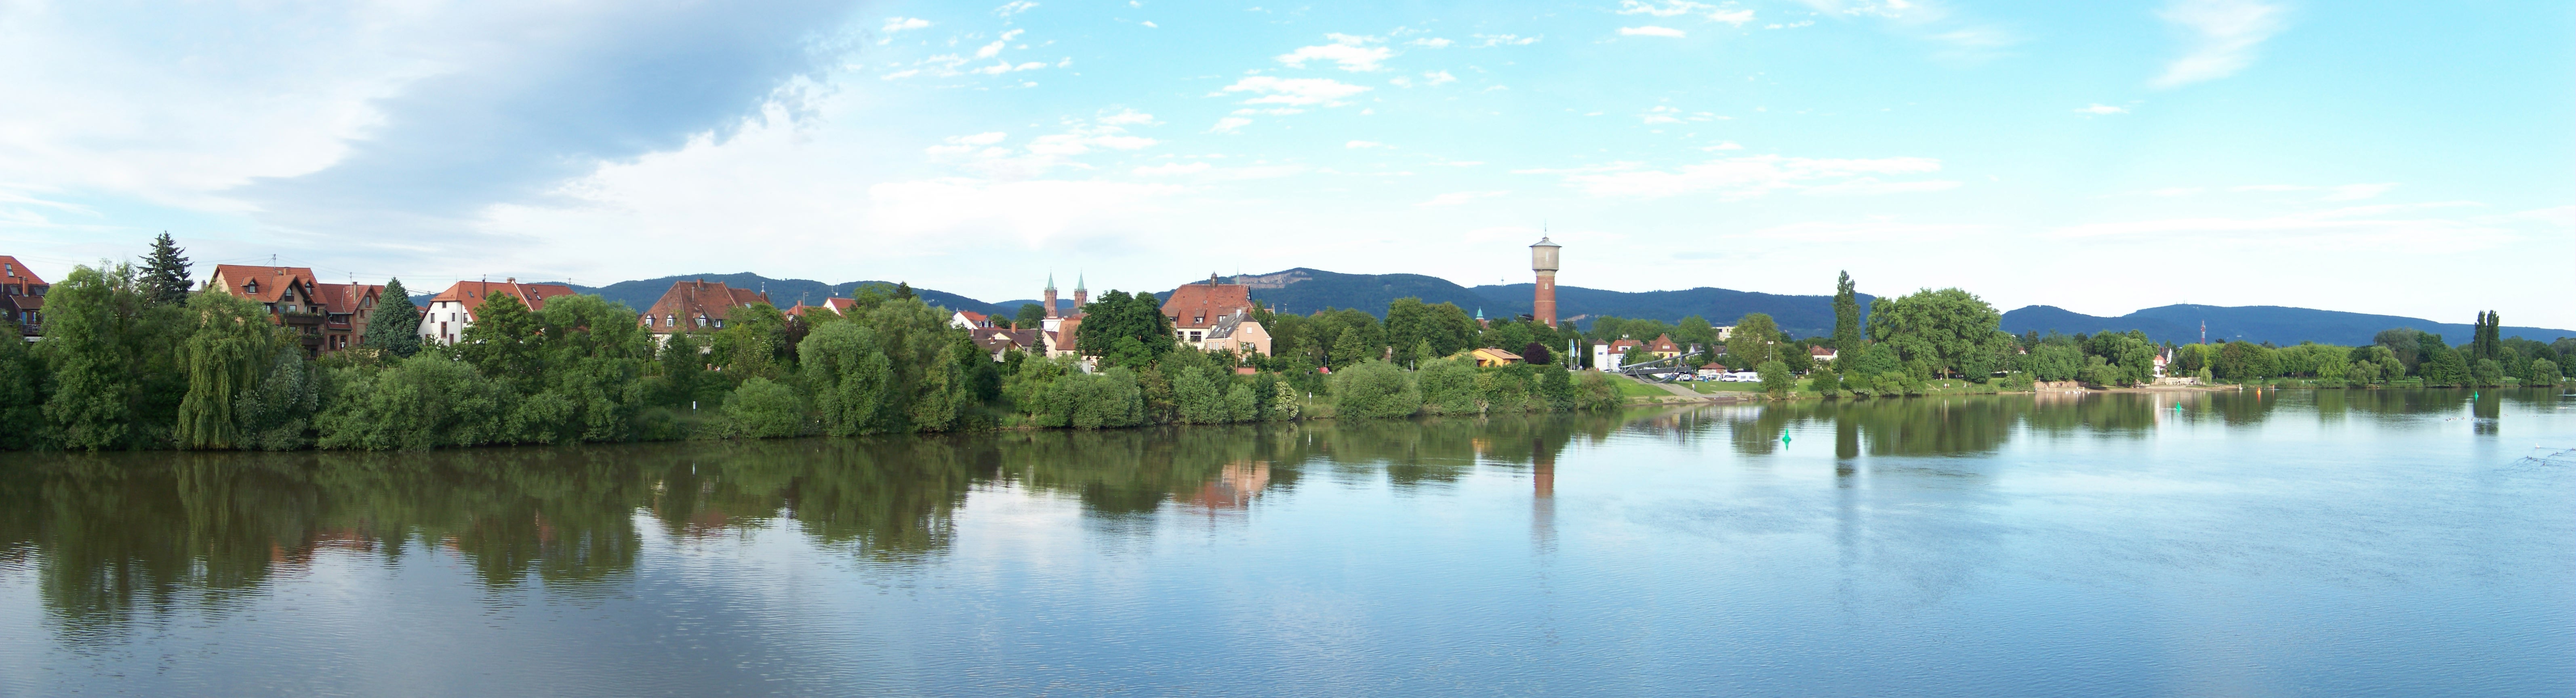 Ladenburgs Neckarufer (von Neckarhausen aus gesehen)